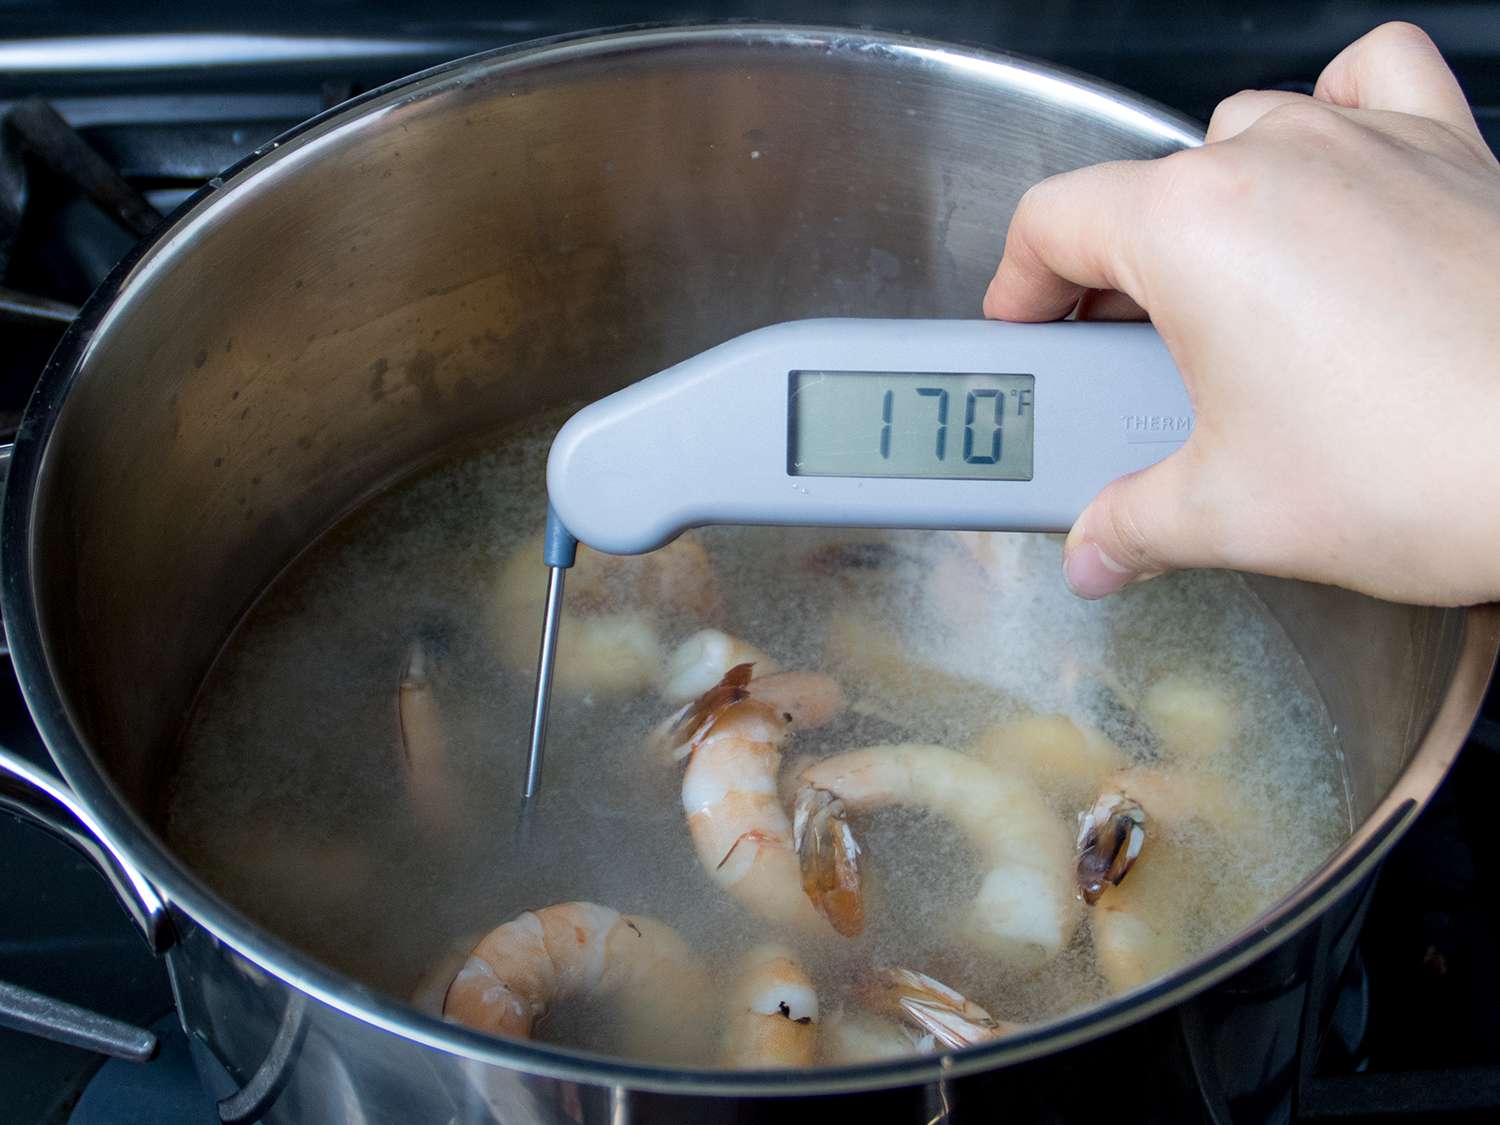 温度计显示锅里煮虾的温度为华氏170度。gydF4y2Ba